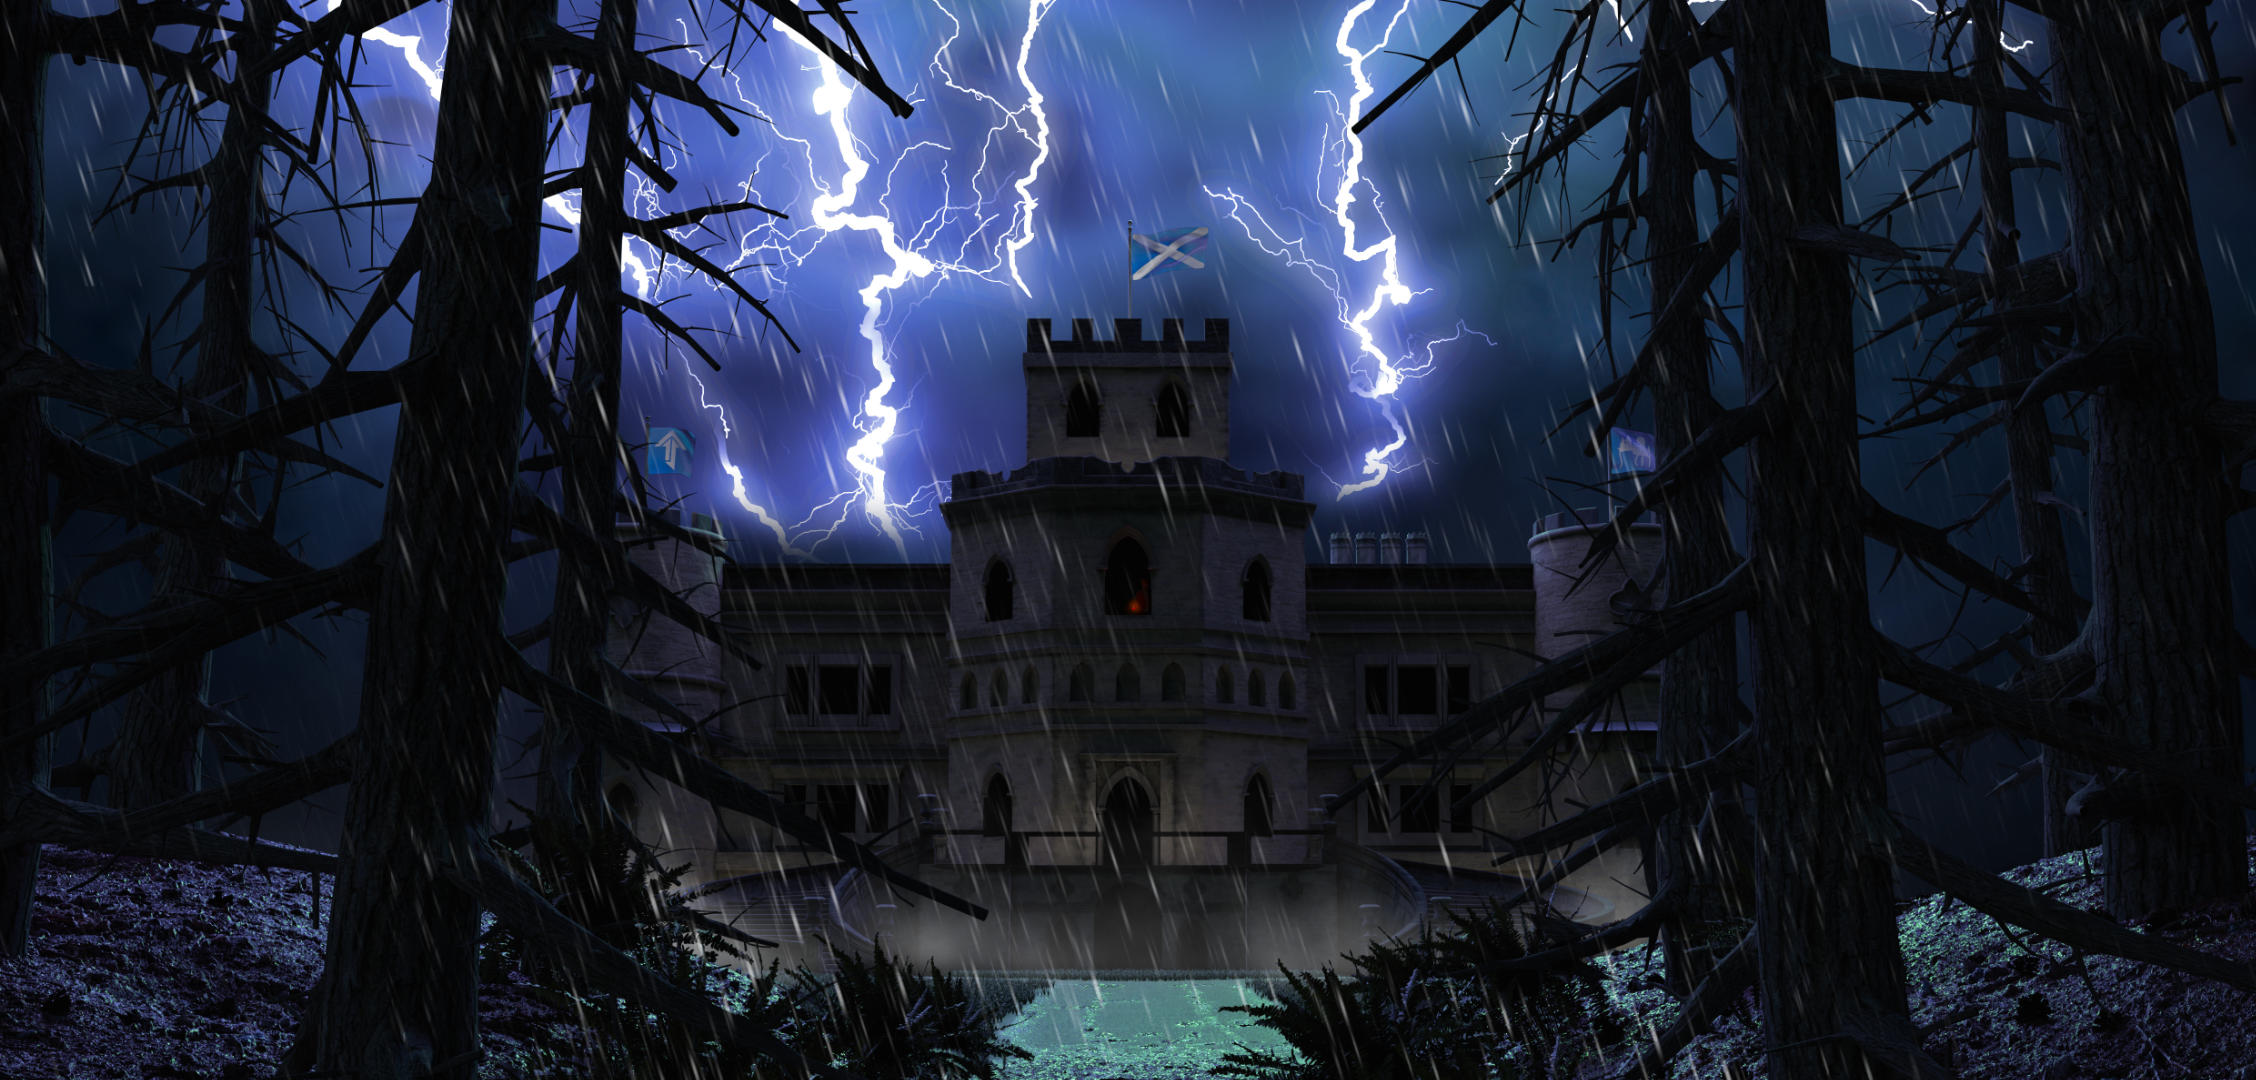 Ein dunkles Schloss in einer regnerischen Nacht, über den Himmel zucken Blitze, im Vordergrund ein schlammiger Pfad.